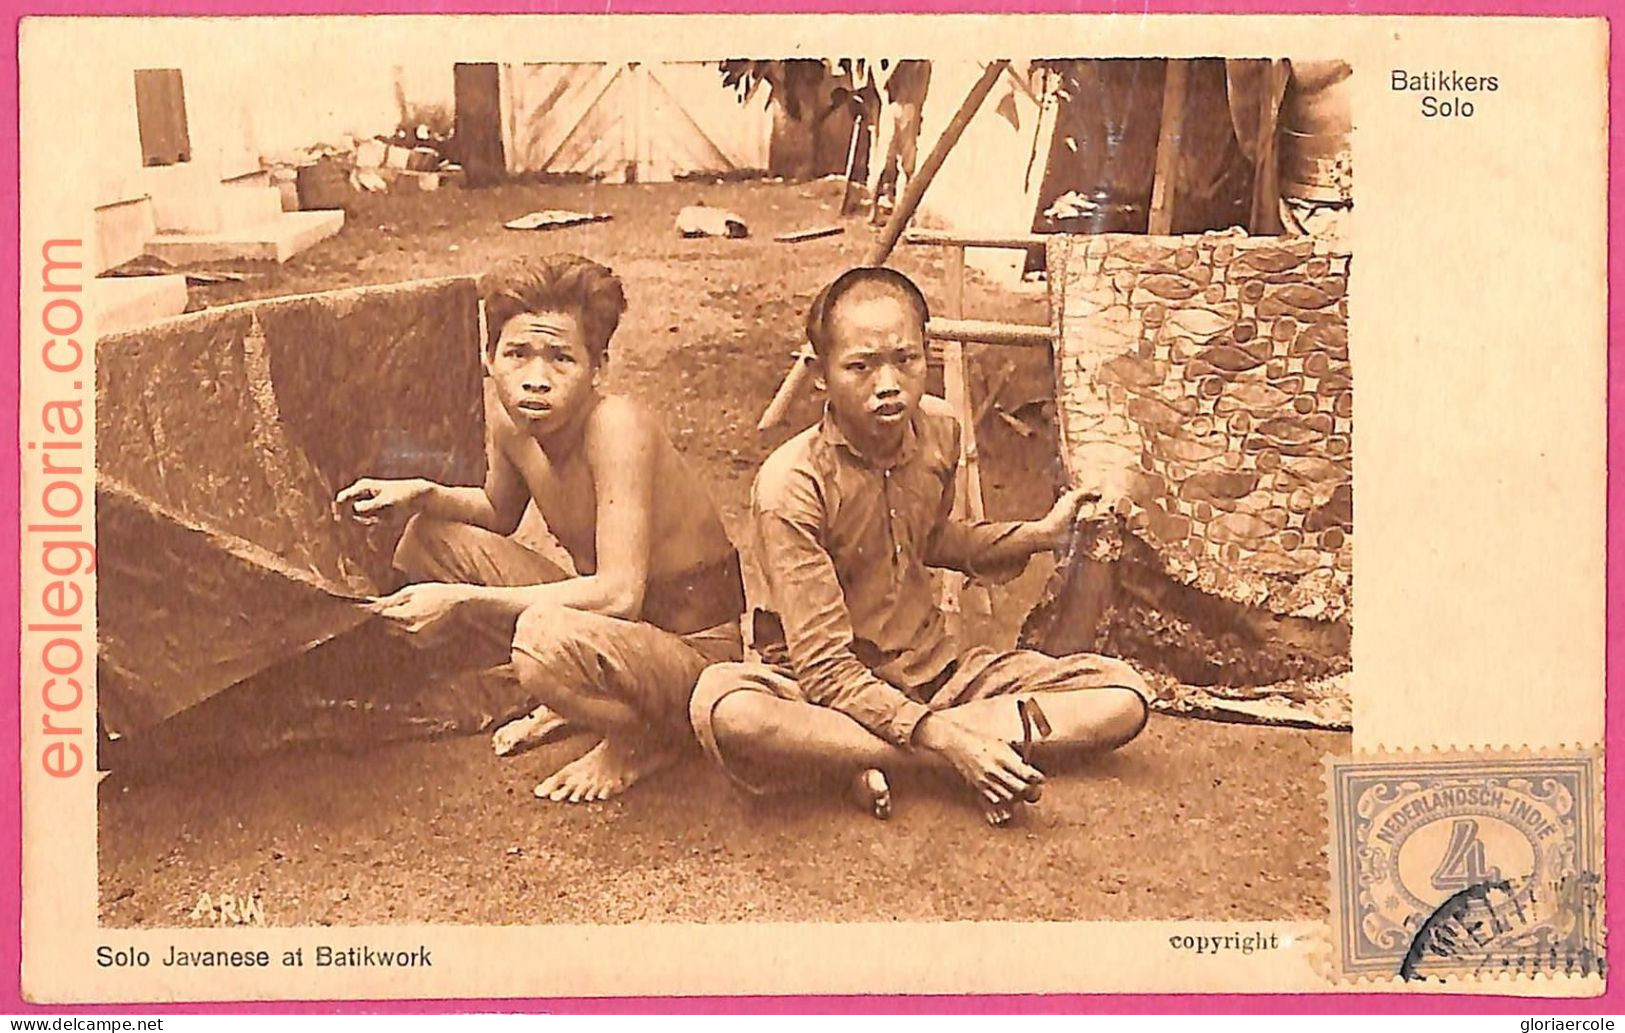 Af9004 - INDONESIA - Vintage POSTCARD - Solo - Ethnic - Asia